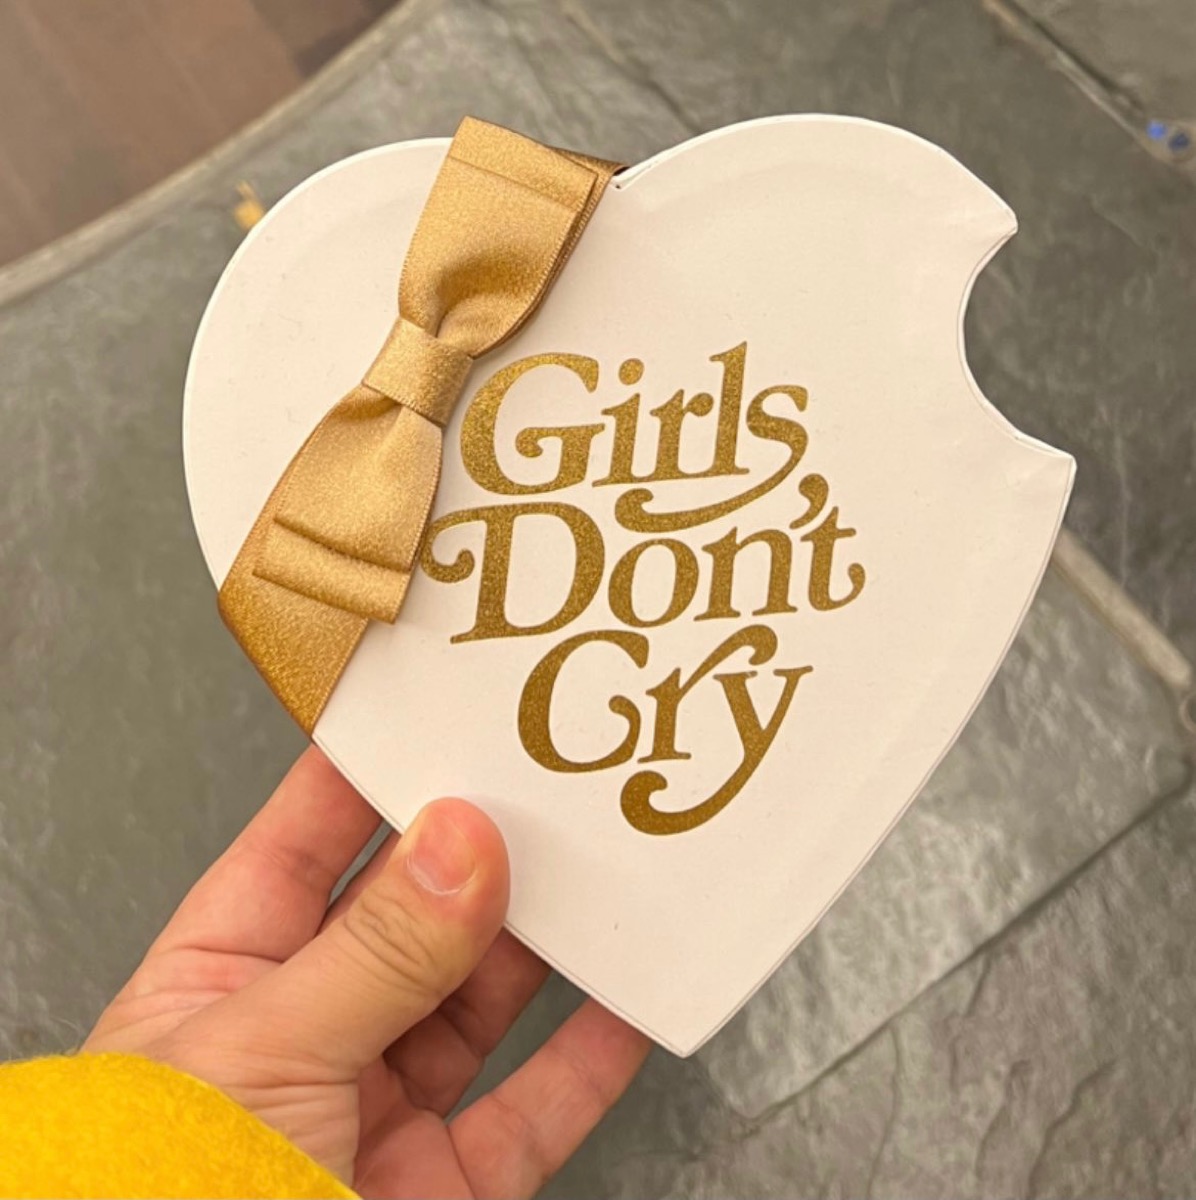 Girls Don't Cry × été バレンタインコレクションの新作が1月27日より